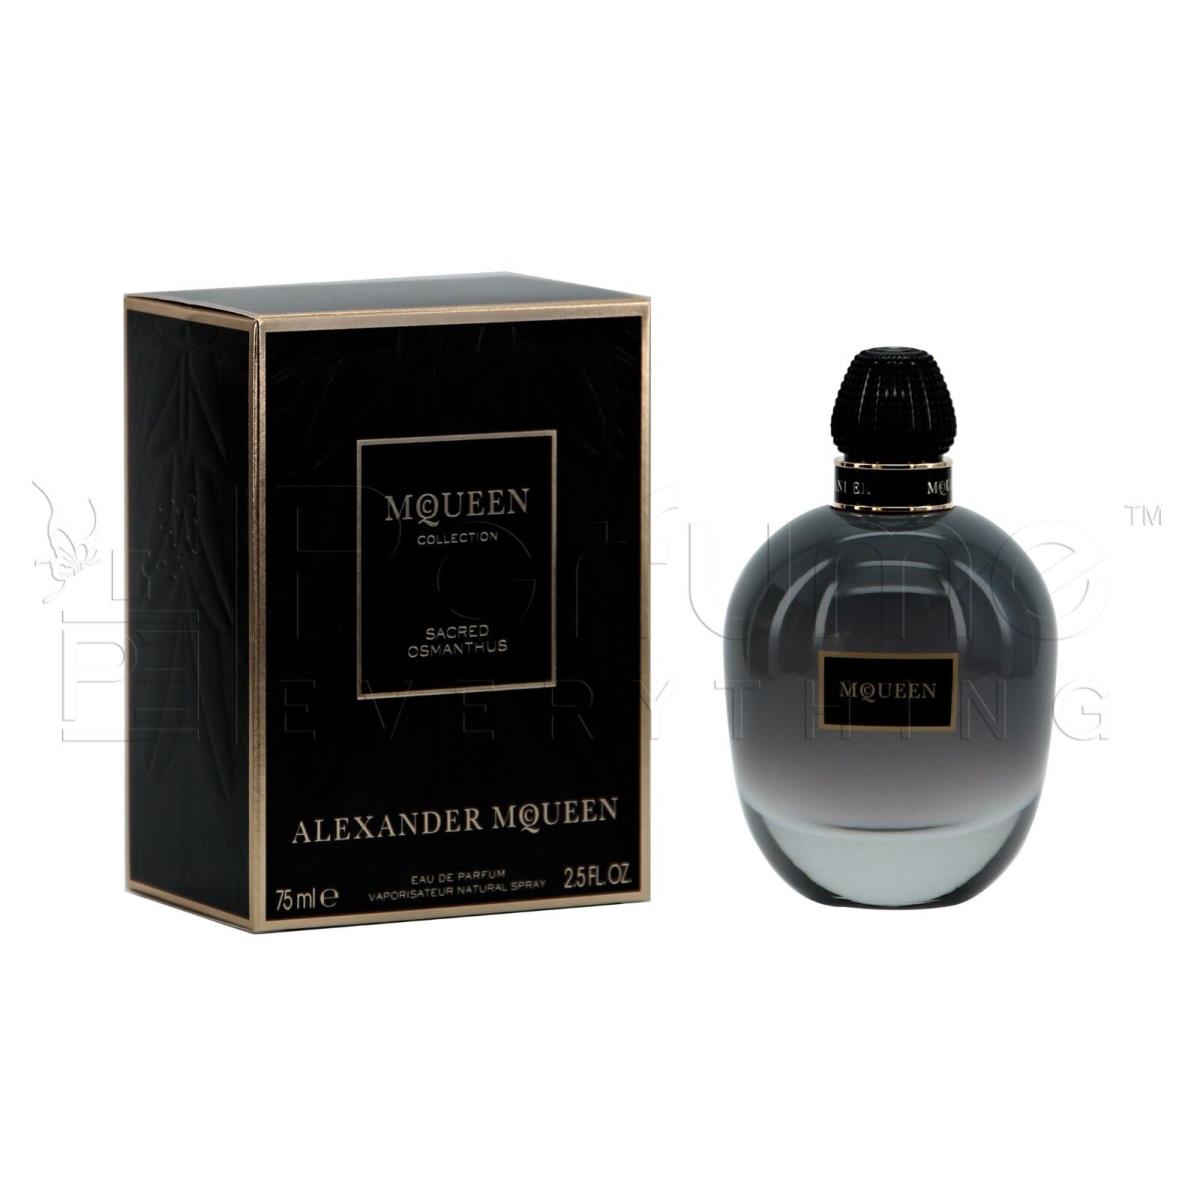 Alexander Mcqueen Sacred Osmanthus Eau de Parfum 2.5 oz